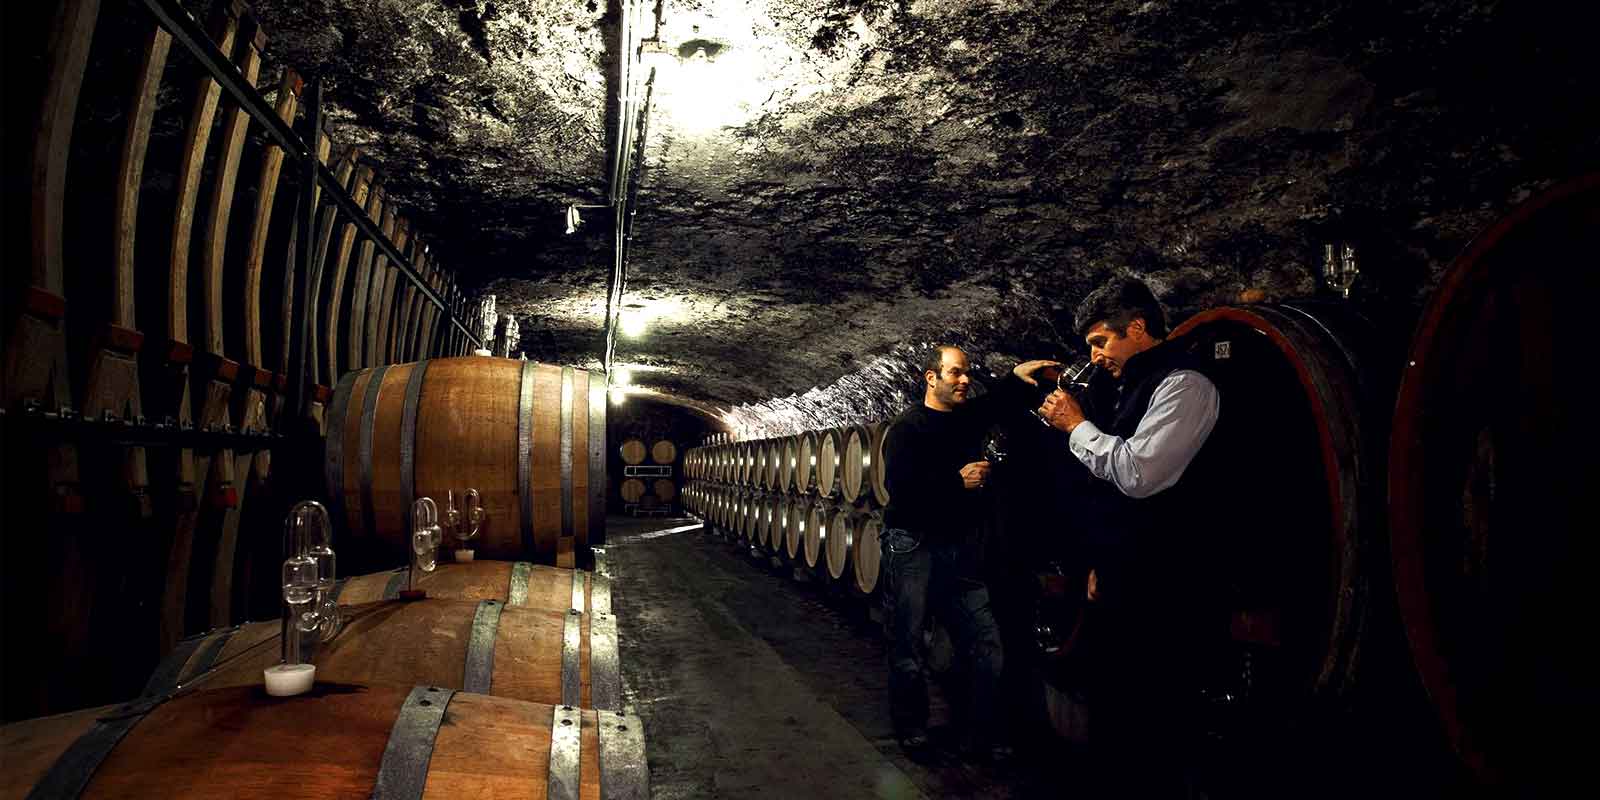 Weingut Kunstler - Regio vinicola de Rheingau No son els valors analitics els que determinen la qualitat, sino el gust del raim, l`aroma del most i, sobretot, l`harmonia dels vins.